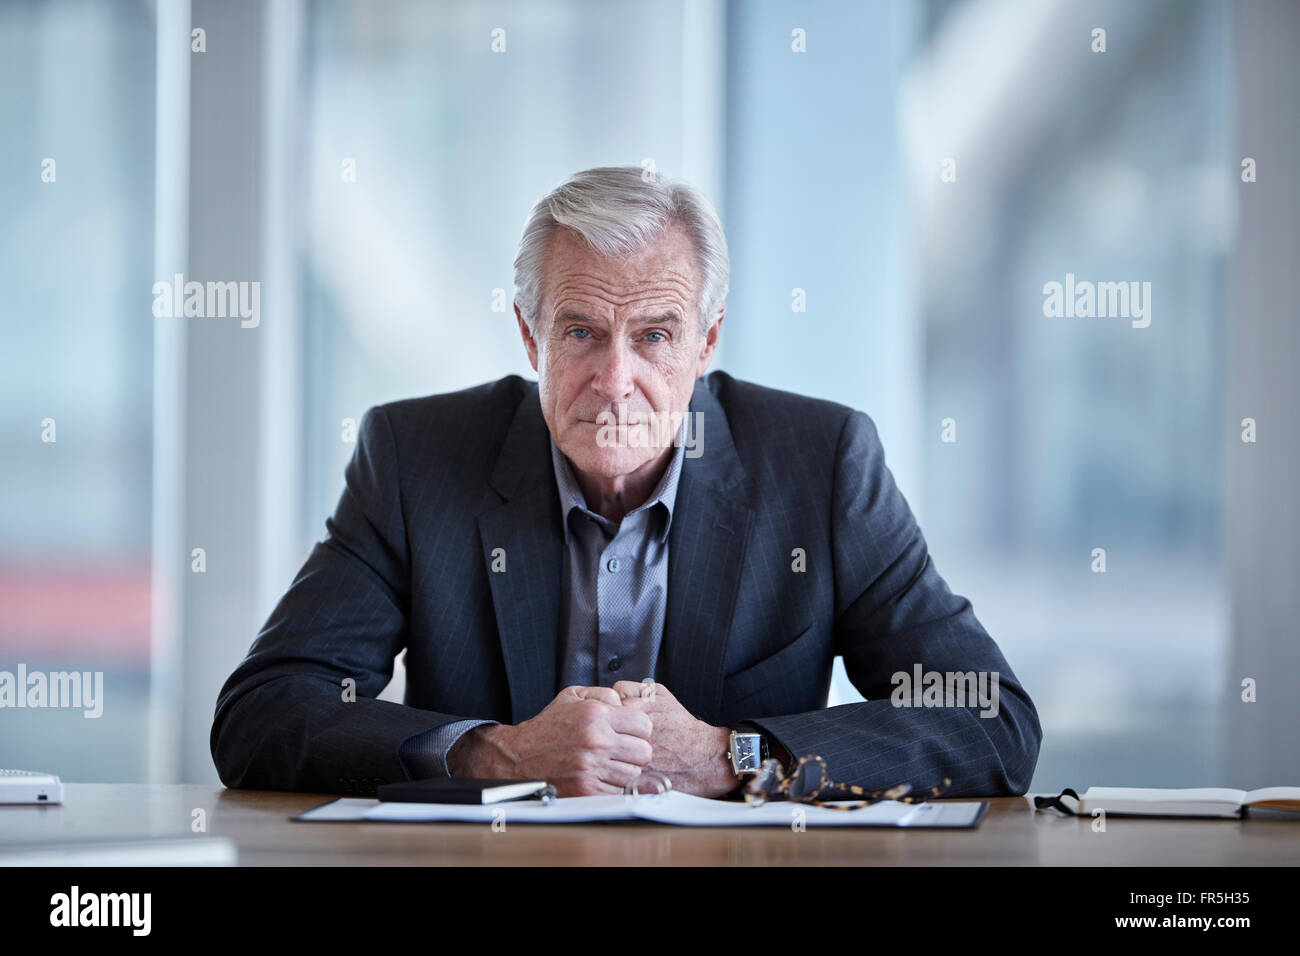 Portrait de graves senior businessman in conference room Banque D'Images